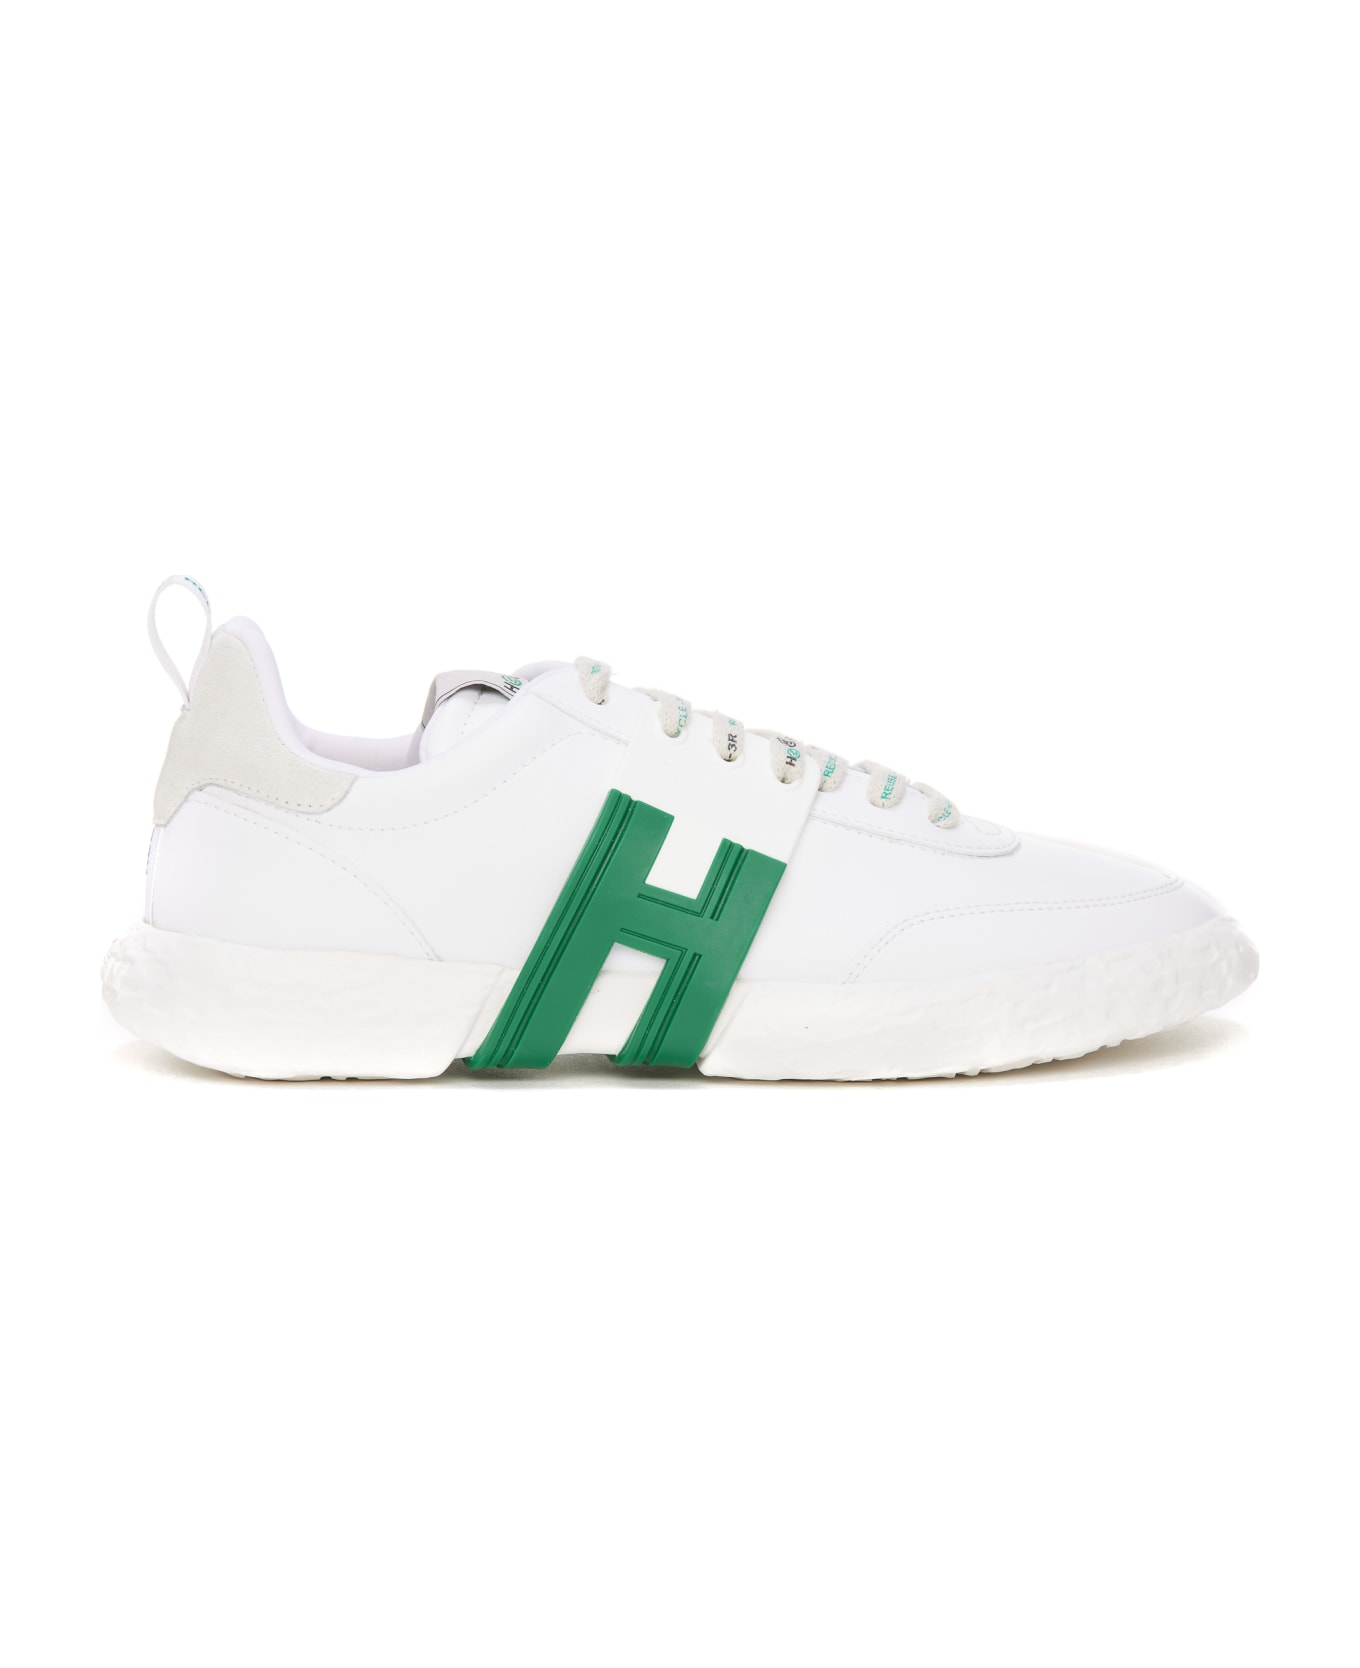 Hogan 3-r Sneakers - Verde